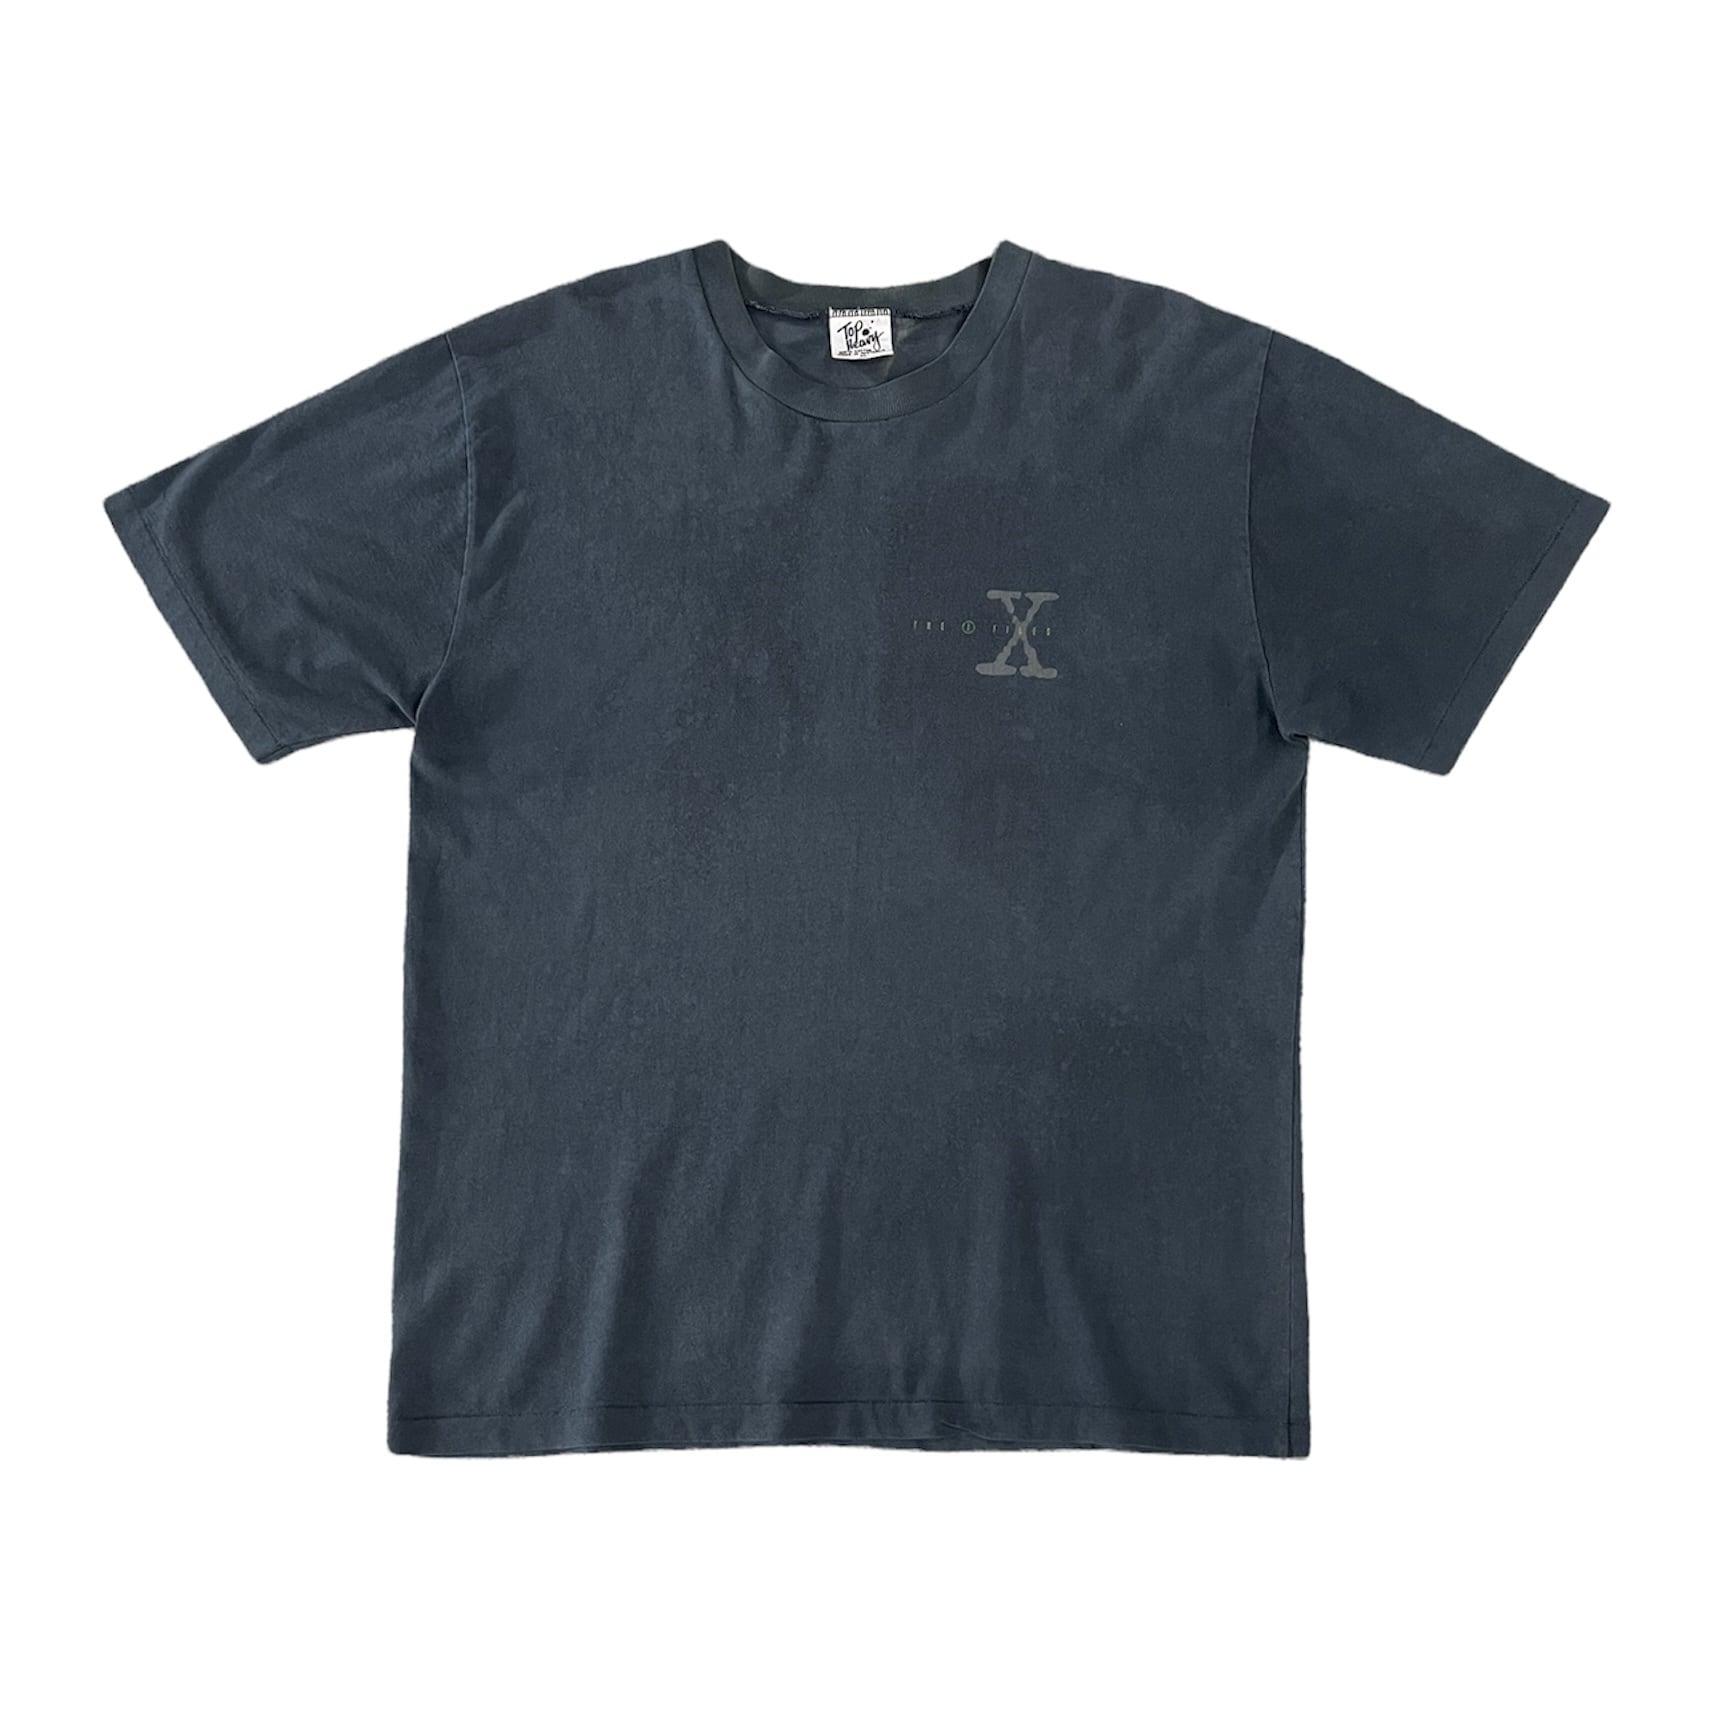 1074. 1990's X file print tee ブラック バックプリント Tシャツ 半袖